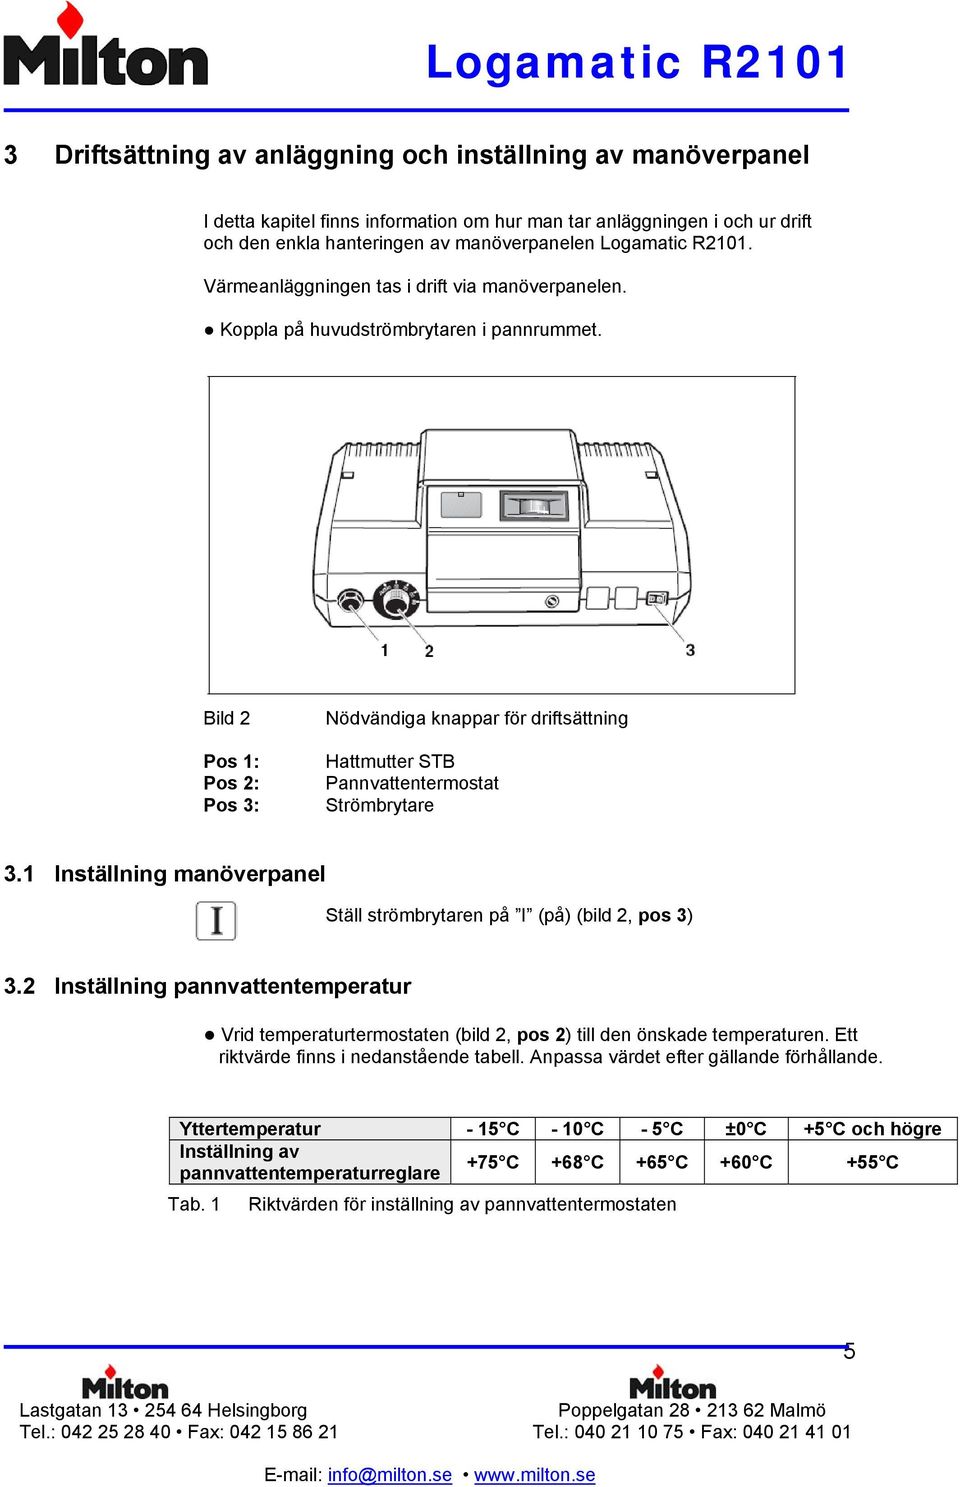 Bild 2 Pos 1: Pos 2: Pos 3: Nödvändiga knappar för driftsättning Hattmutter STB Pannvattentermostat Strömbrytare 3.1 Inställning manöverpanel Ställ strömbrytaren på I (på) (bild 2, pos 3) 3.